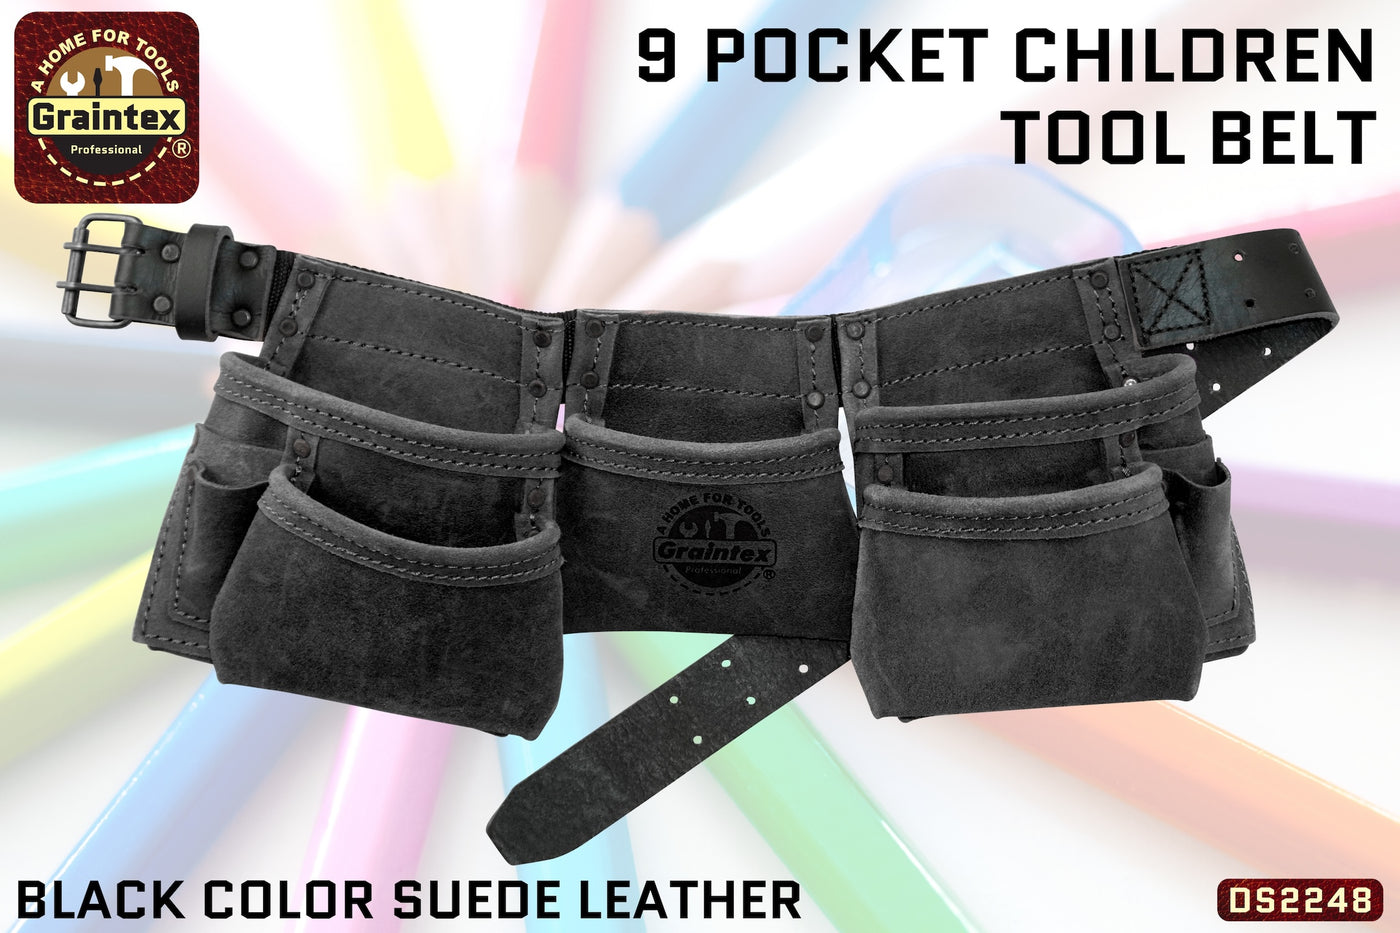 DS2248 :: 9 Pocket Children Tool Belt Black Color Suede Leather